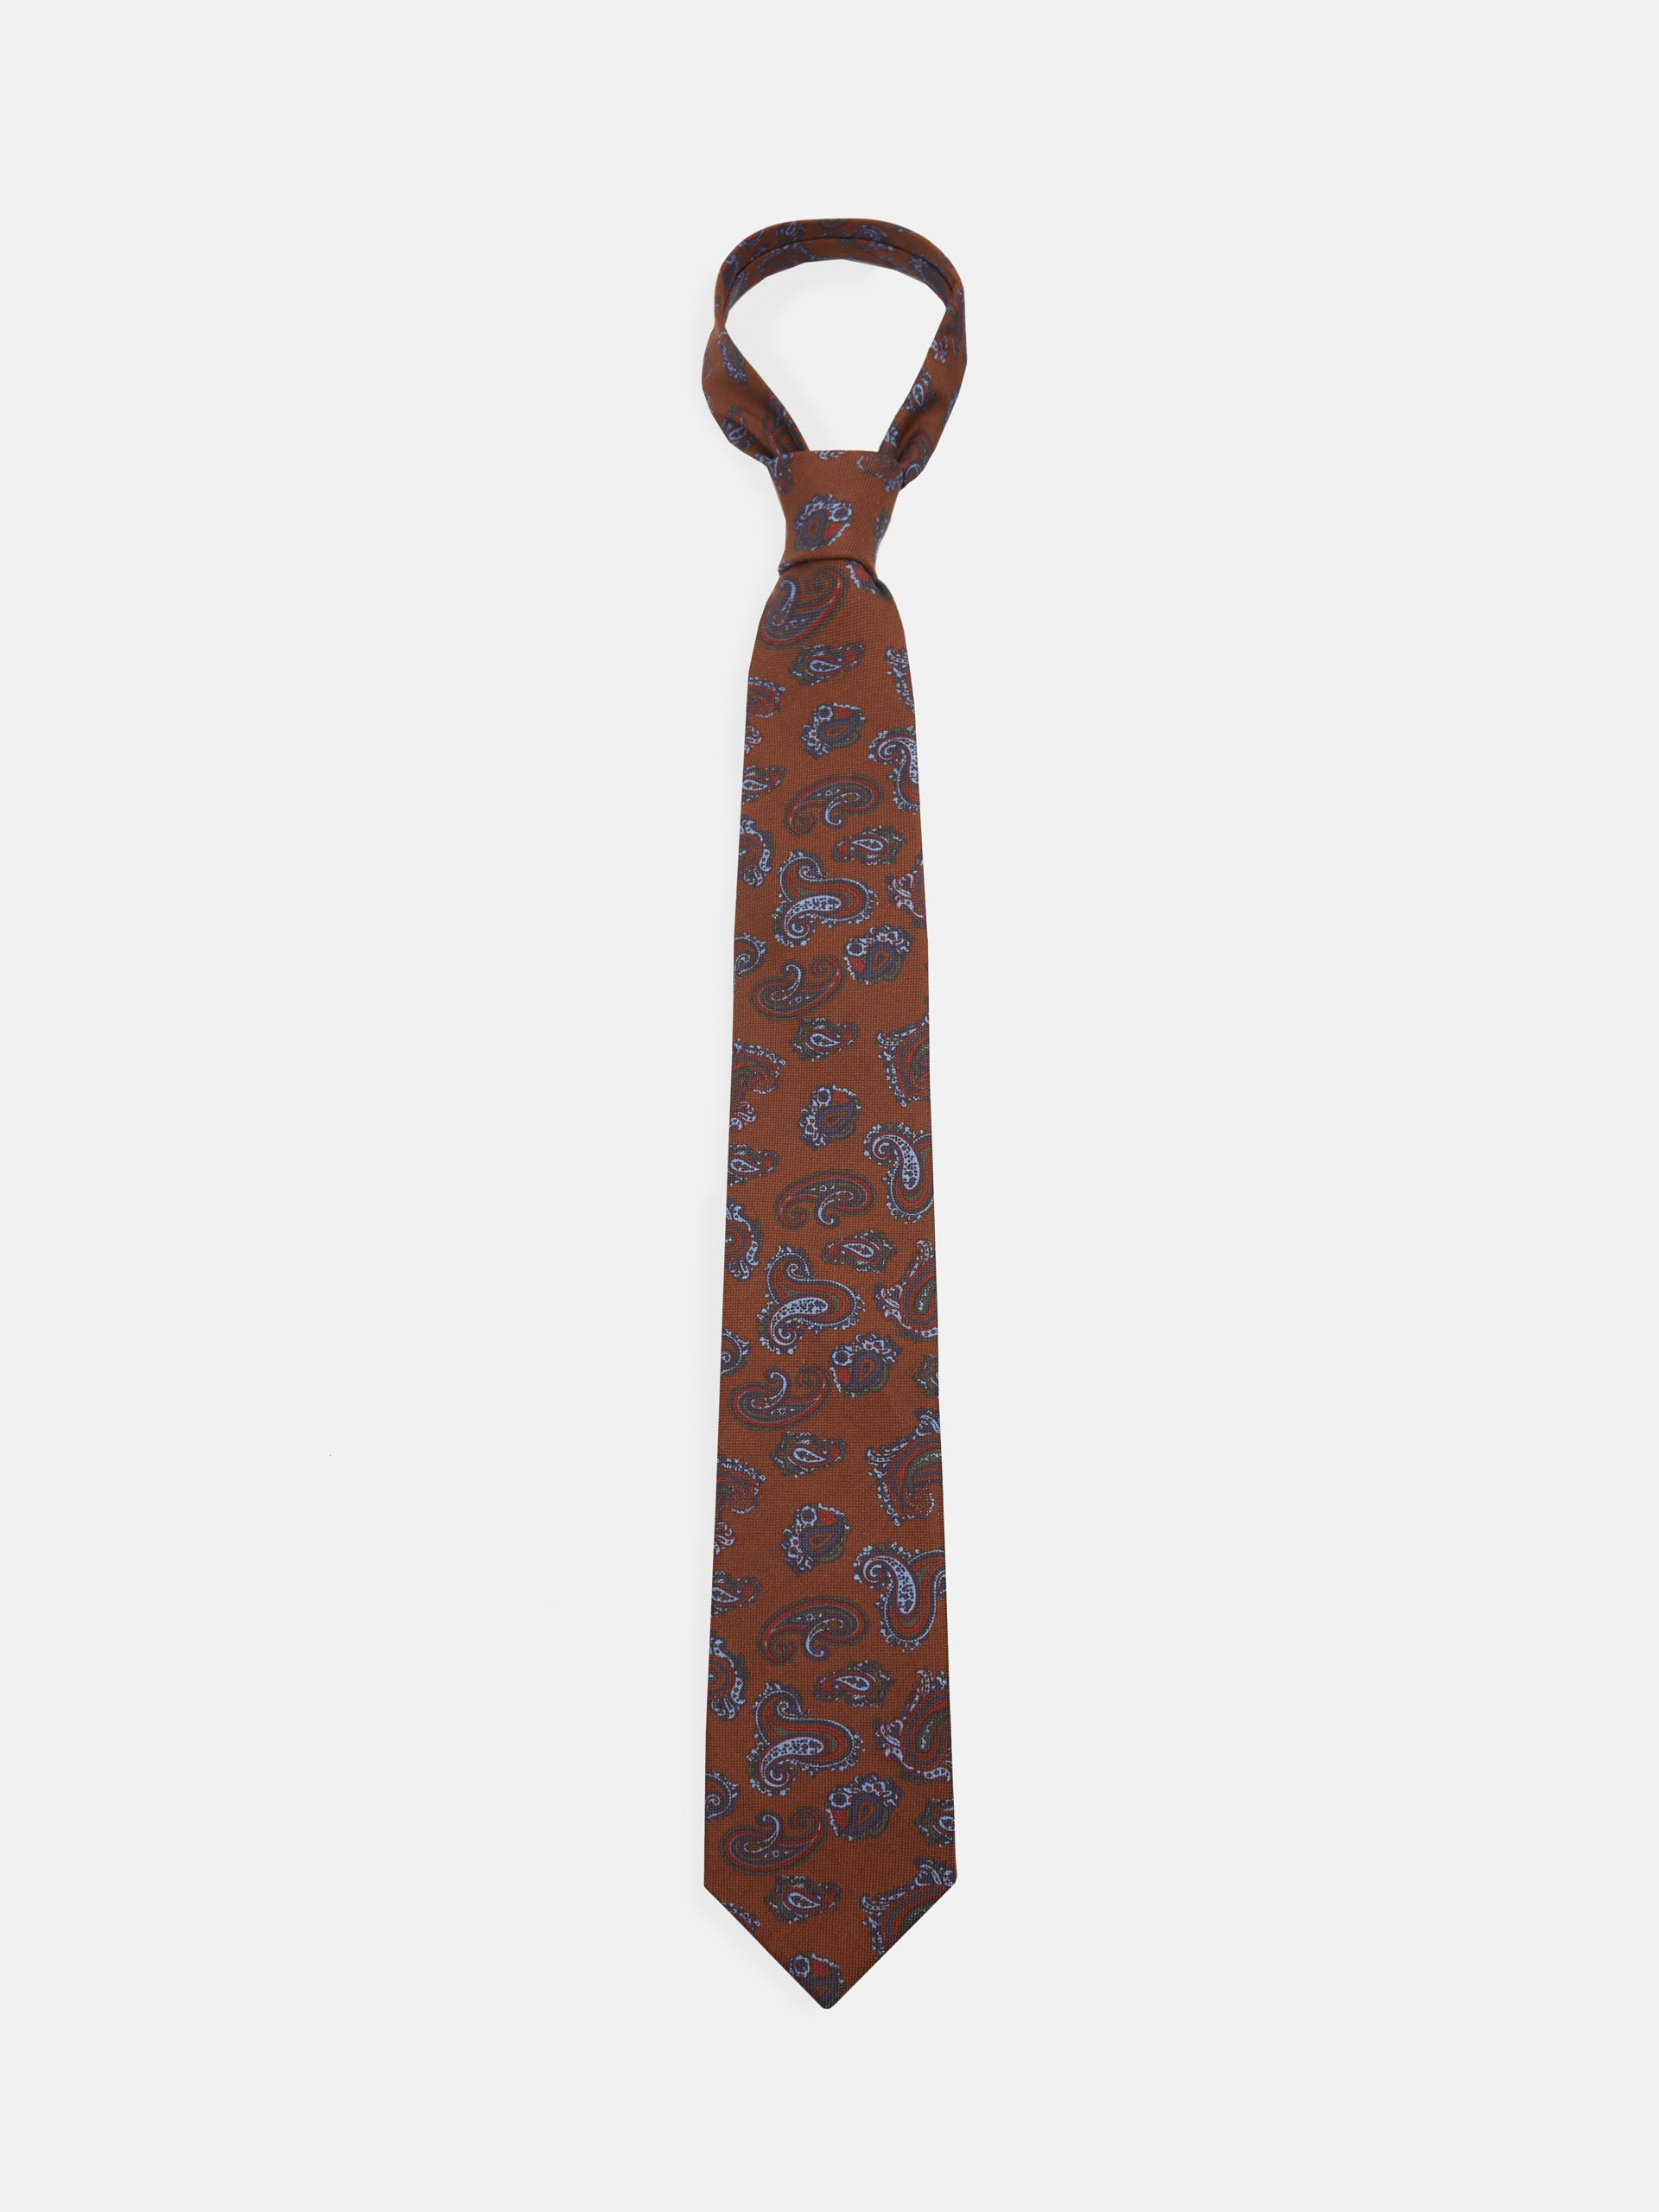 Corbata estampada paisley marron